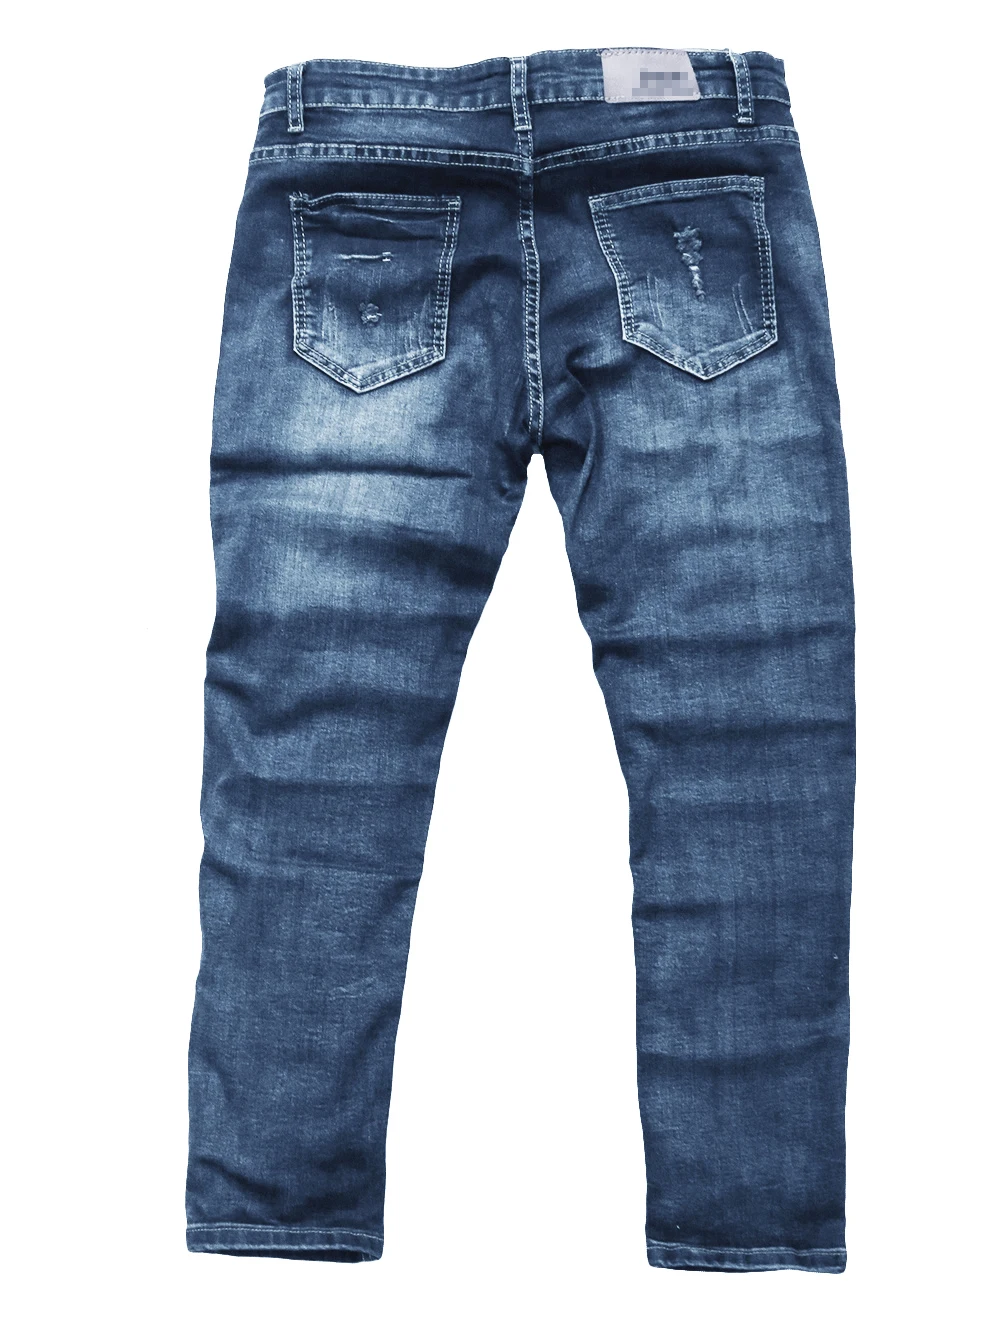 GUMPRUN мужские джинсы в стиле ретро с дырками, уличное платье, джинсы для мужчин, Стрейчевые прямые облегающие джинсы в стиле хип-хоп, модные повседневные экстравагантные джинсы